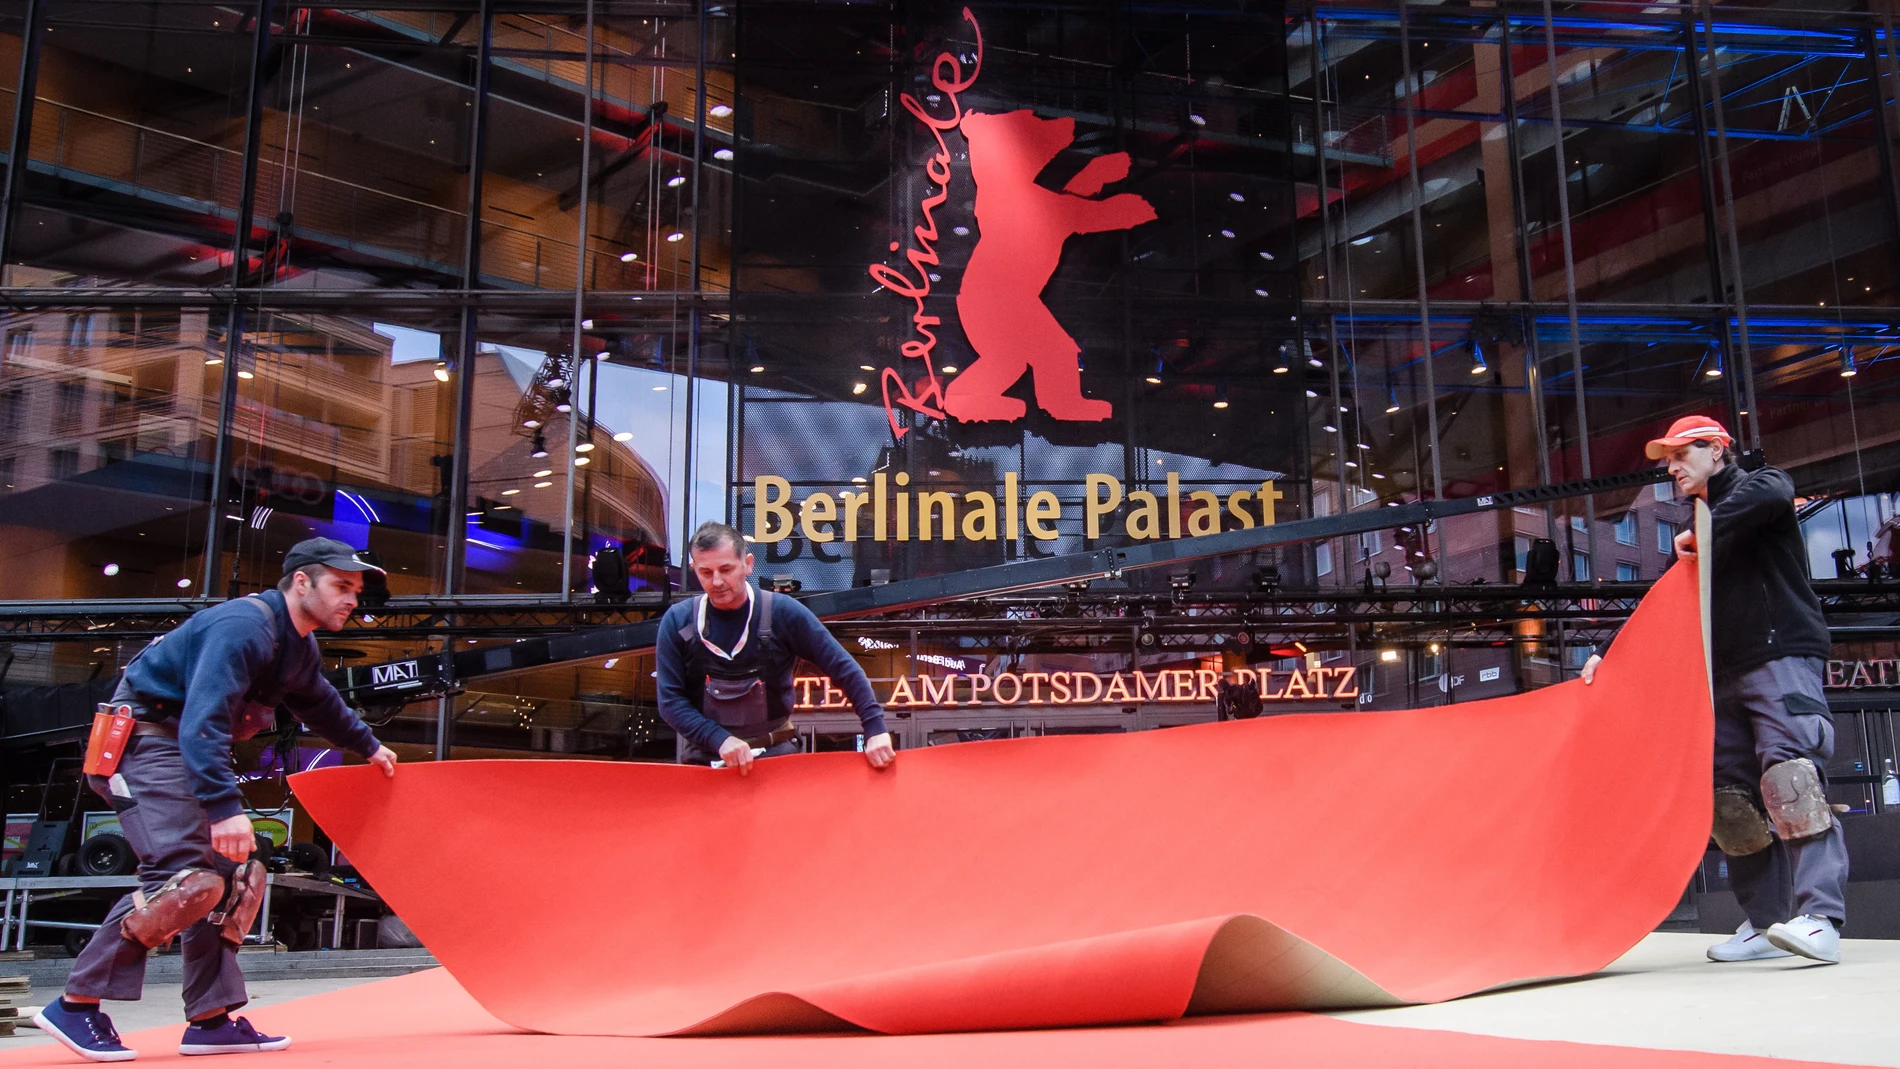 La Berlinale dice adiós al género: el premio a la mejor actuación no distinguirá entre actores y actrices